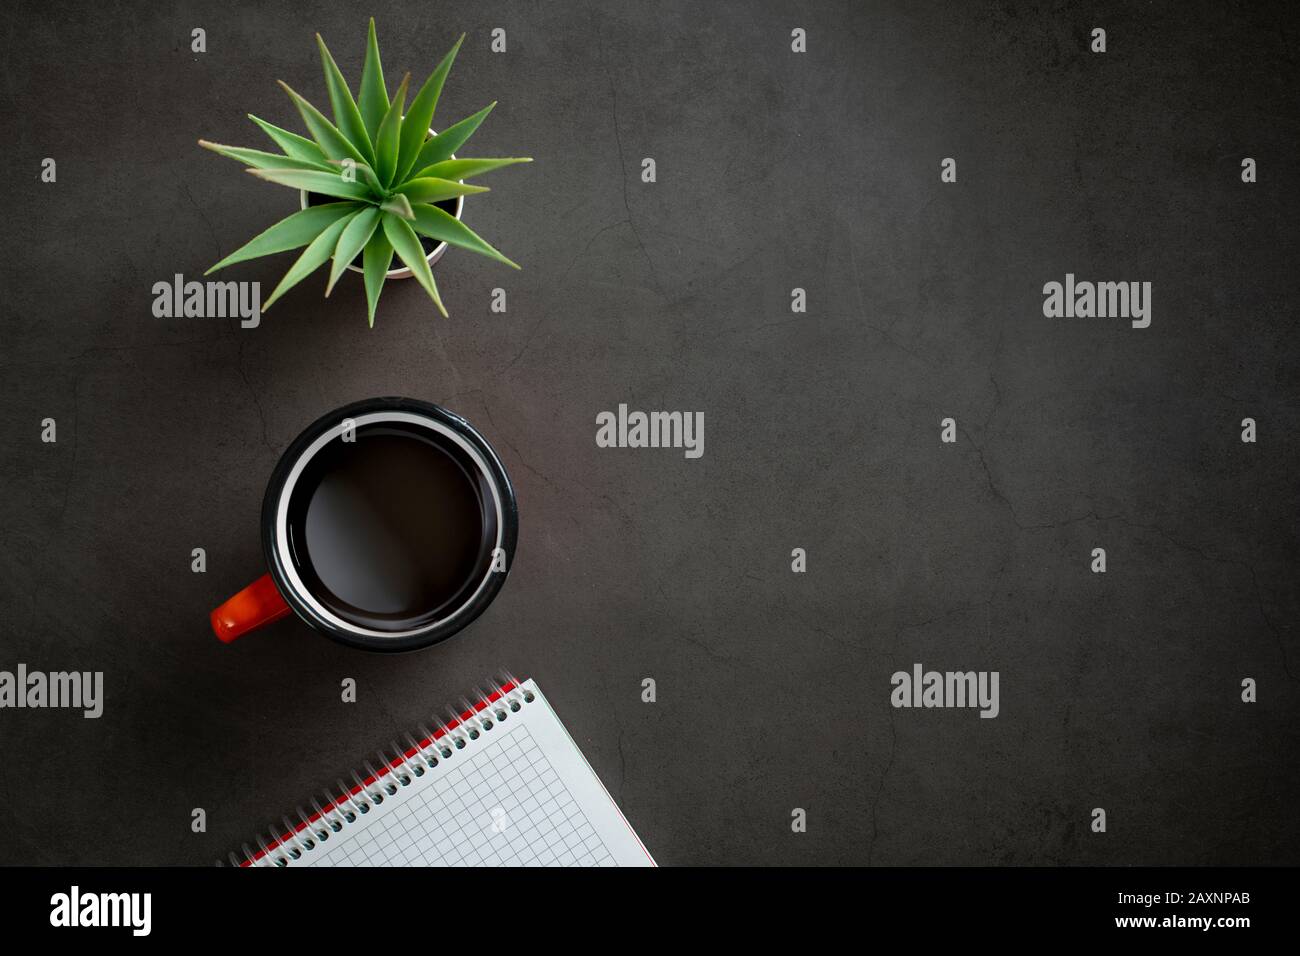 vista superior de mesa con bloc de notas, café y planta sobre fondo negro. Foto de stock